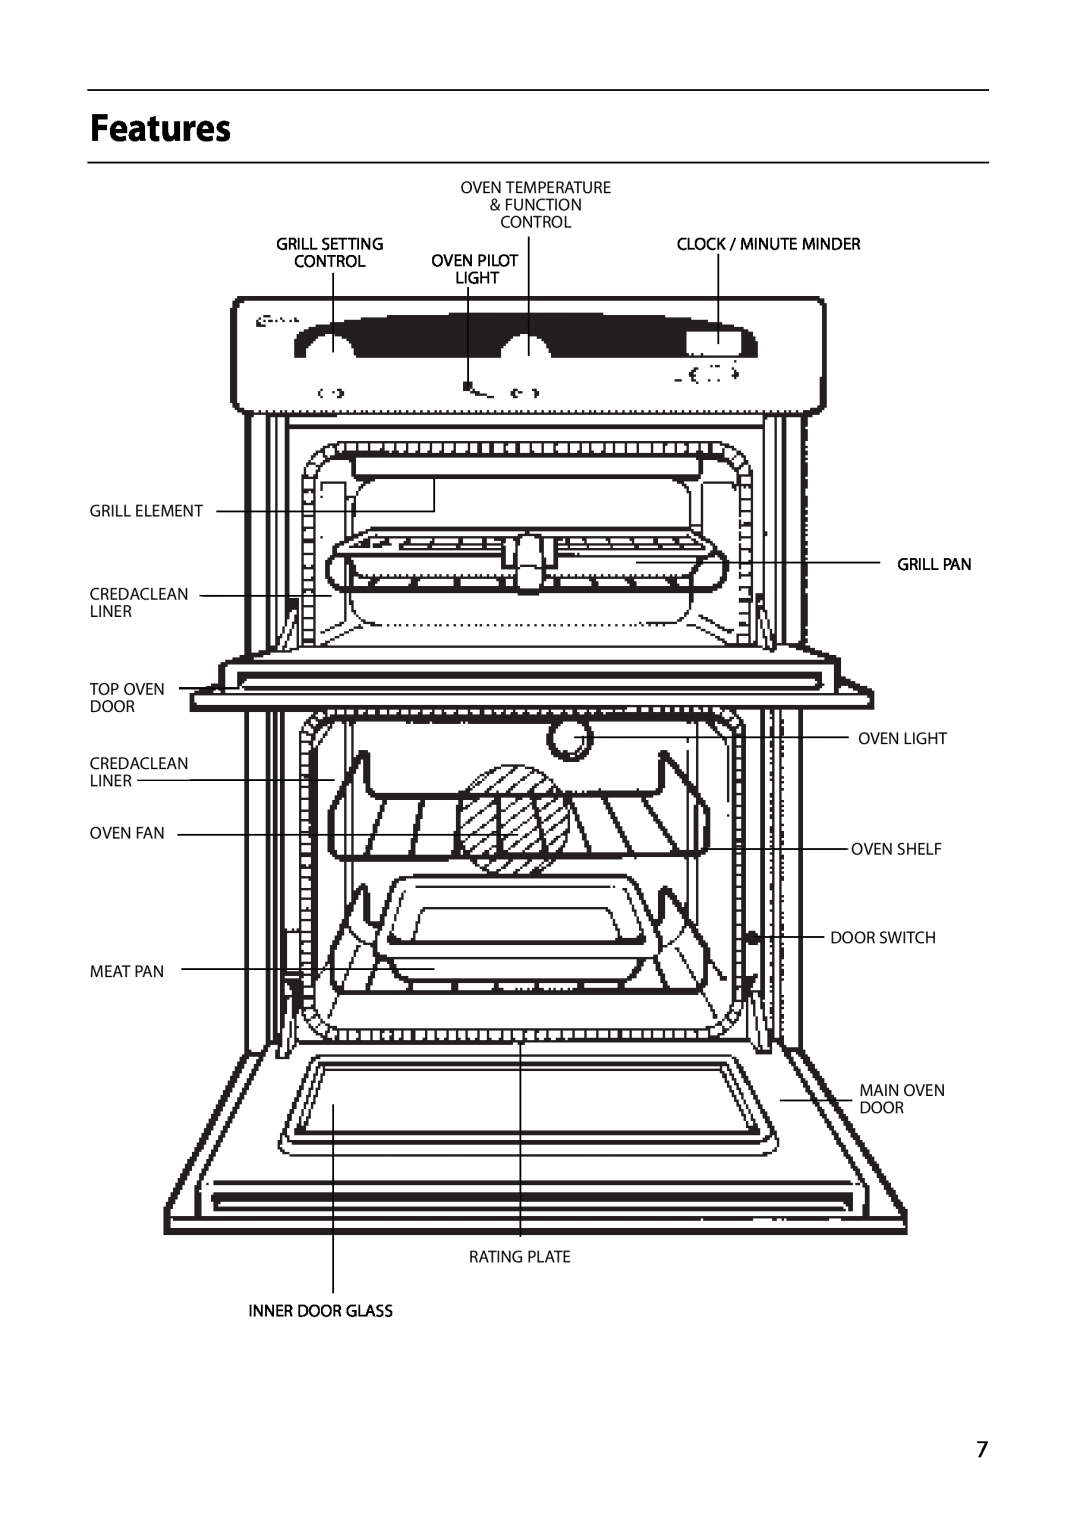 Creda D130E manual Features, Oven Temperature Function Control, Top Oven Door Credaclean Liner Oven Fan Meat Pan 